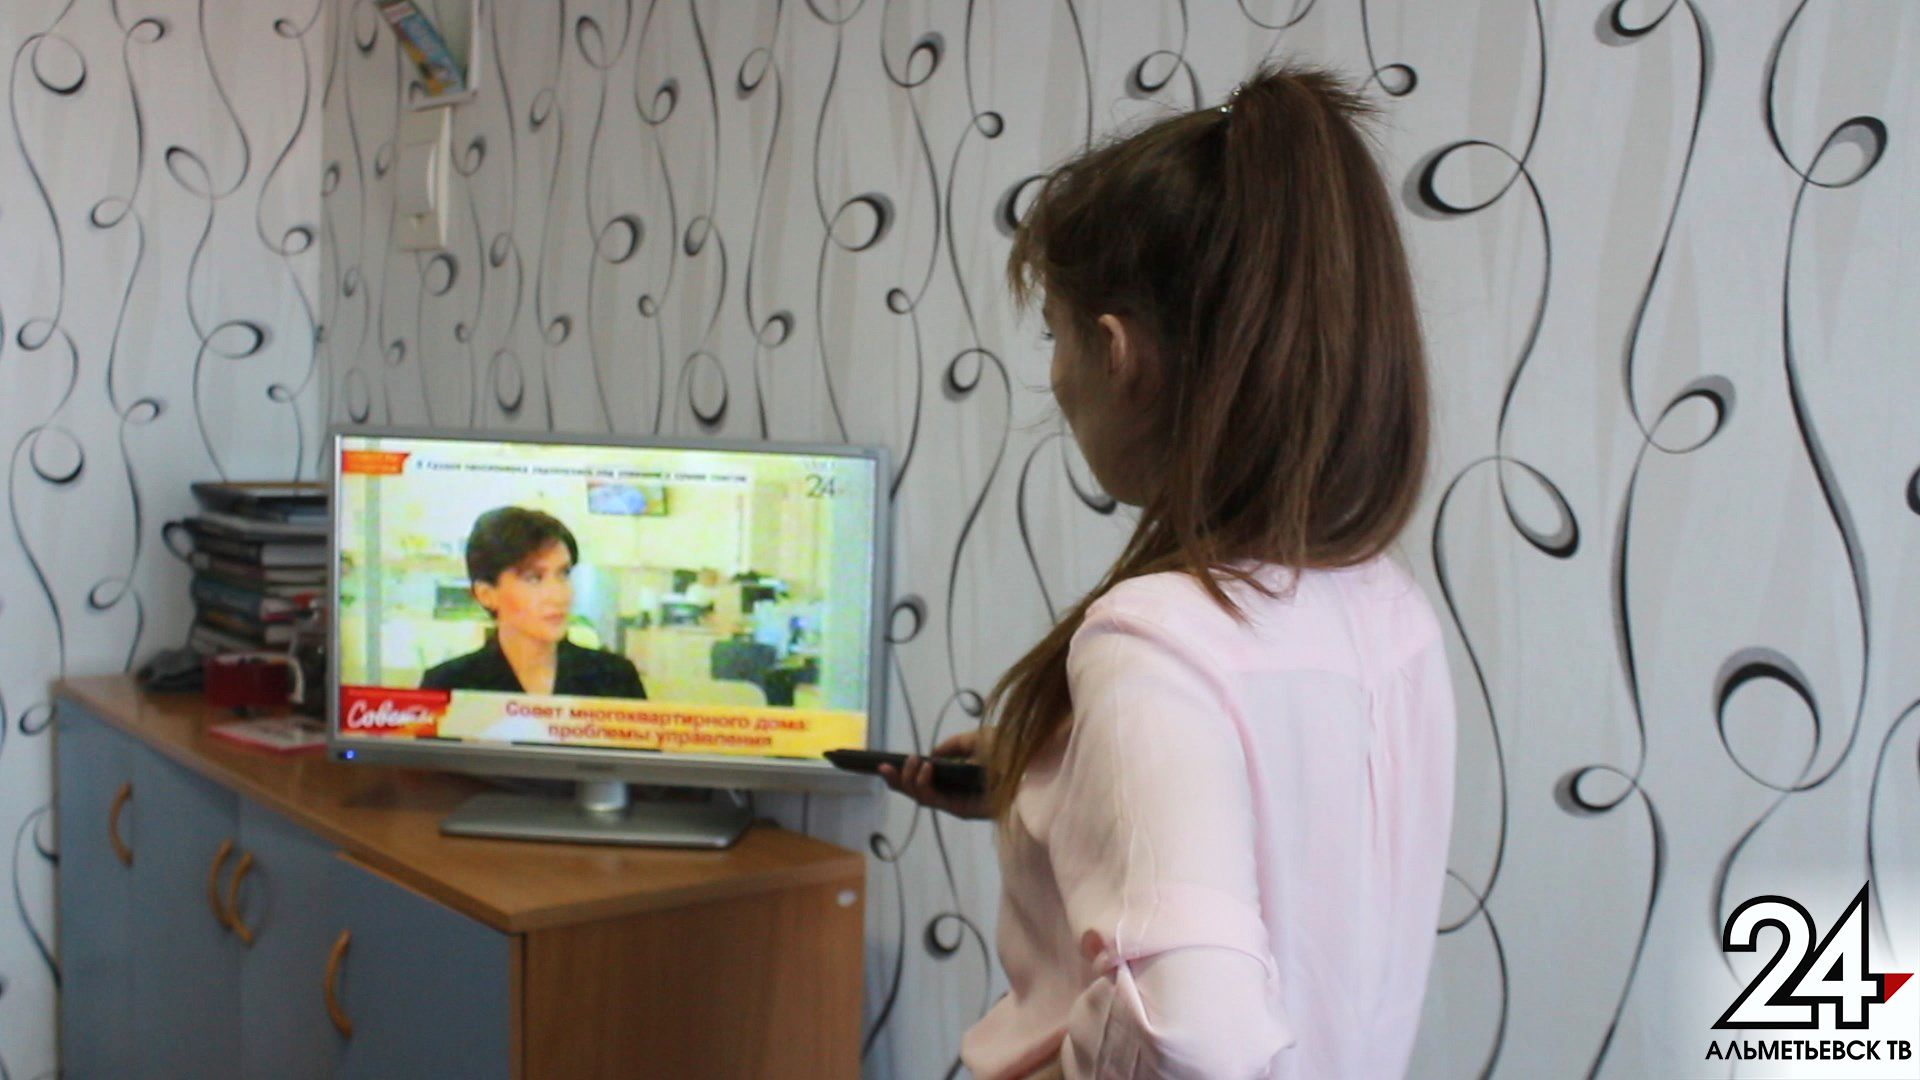 Татарстан полностью перейдет на цифровое эфирное телевещание только в октябре